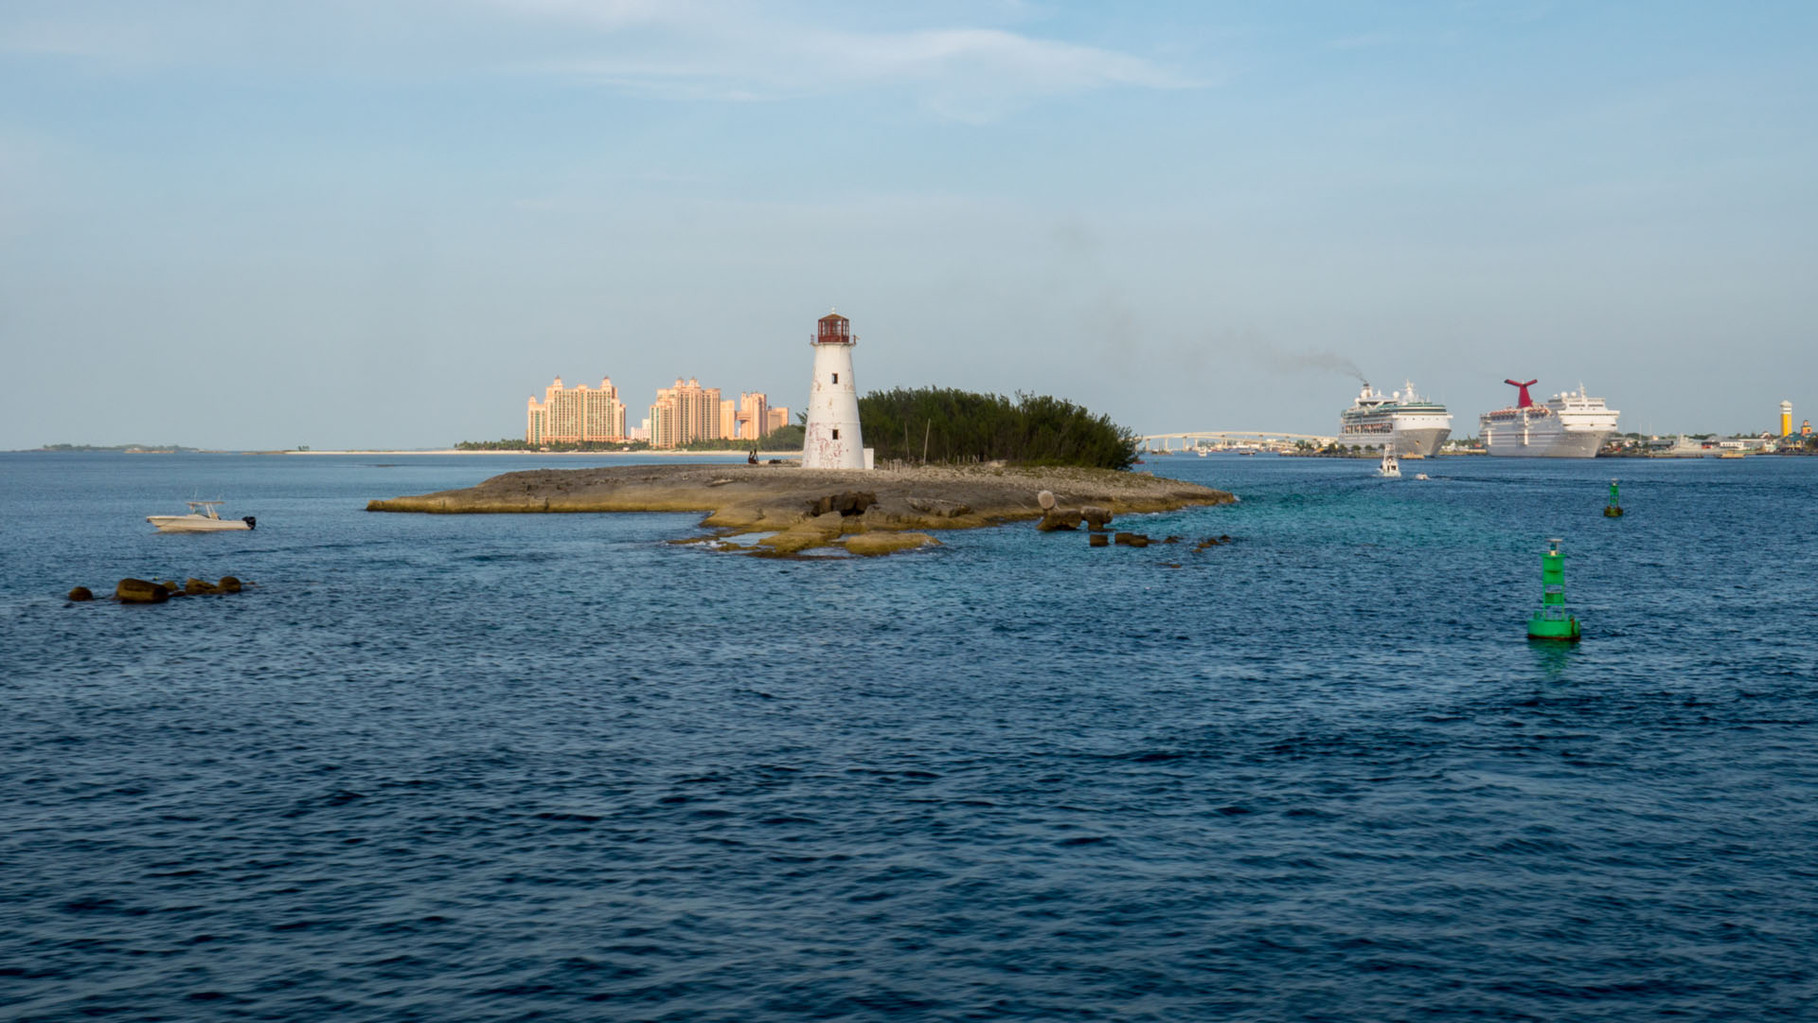 Paradise Island and Nassau cruiseship harbour